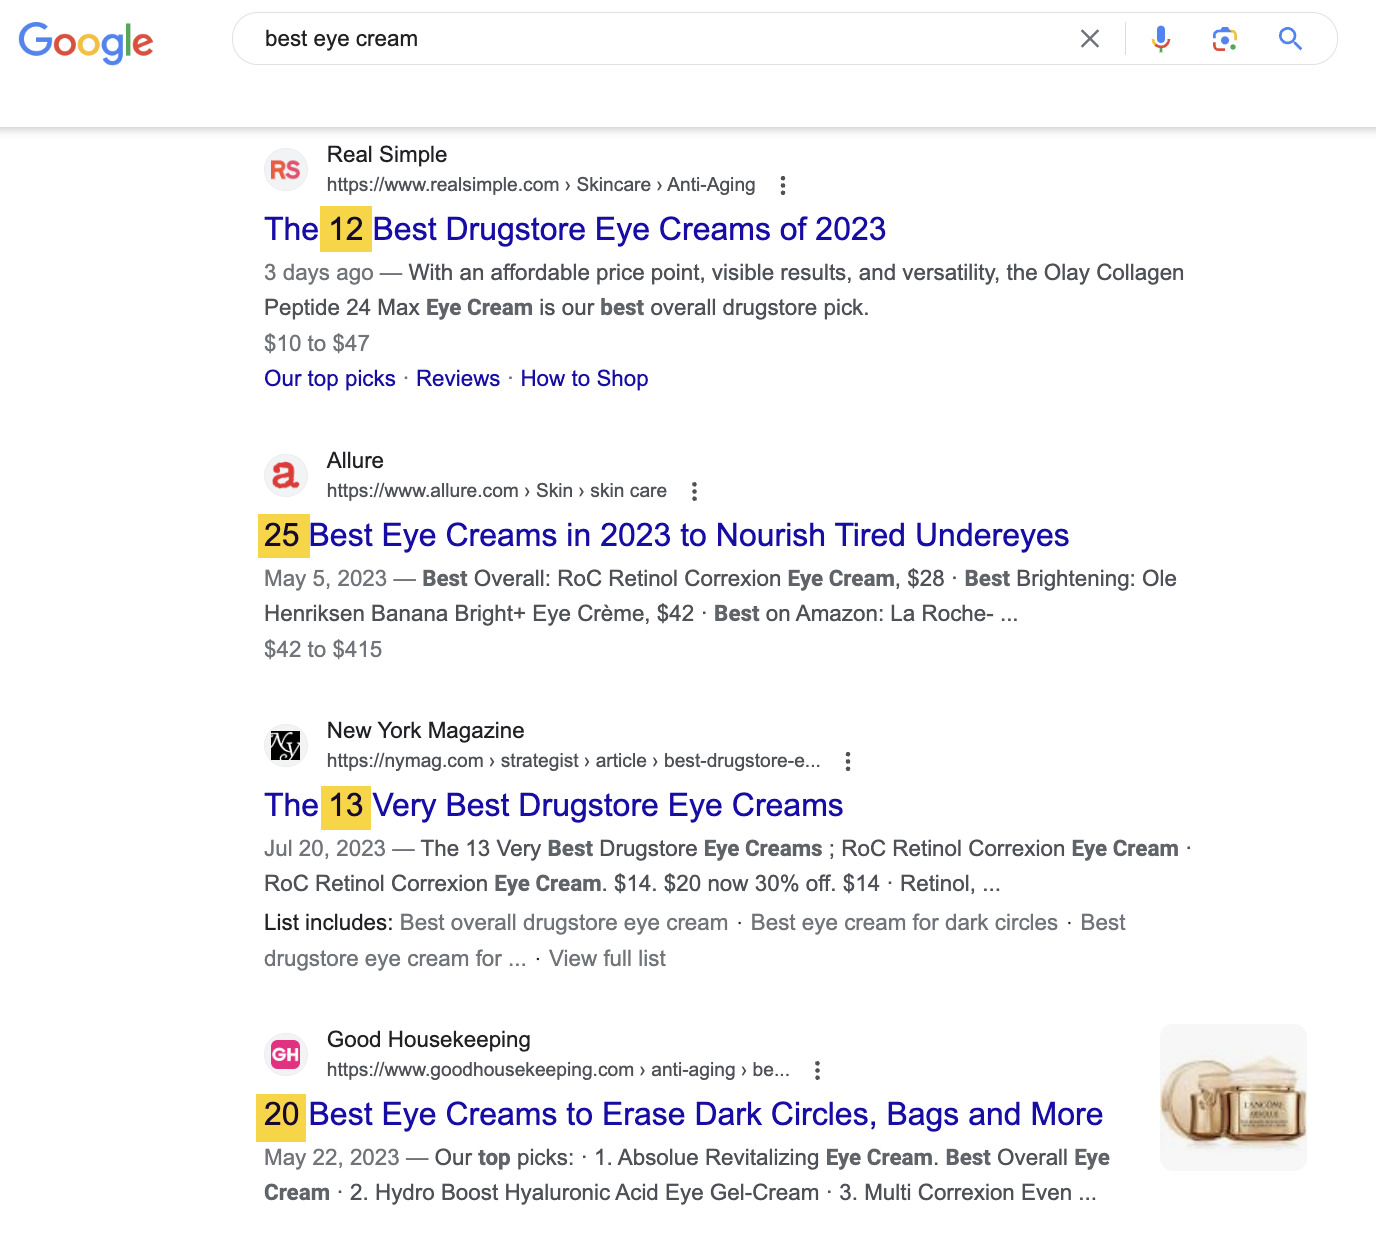 Google SERP for "best eye cream"